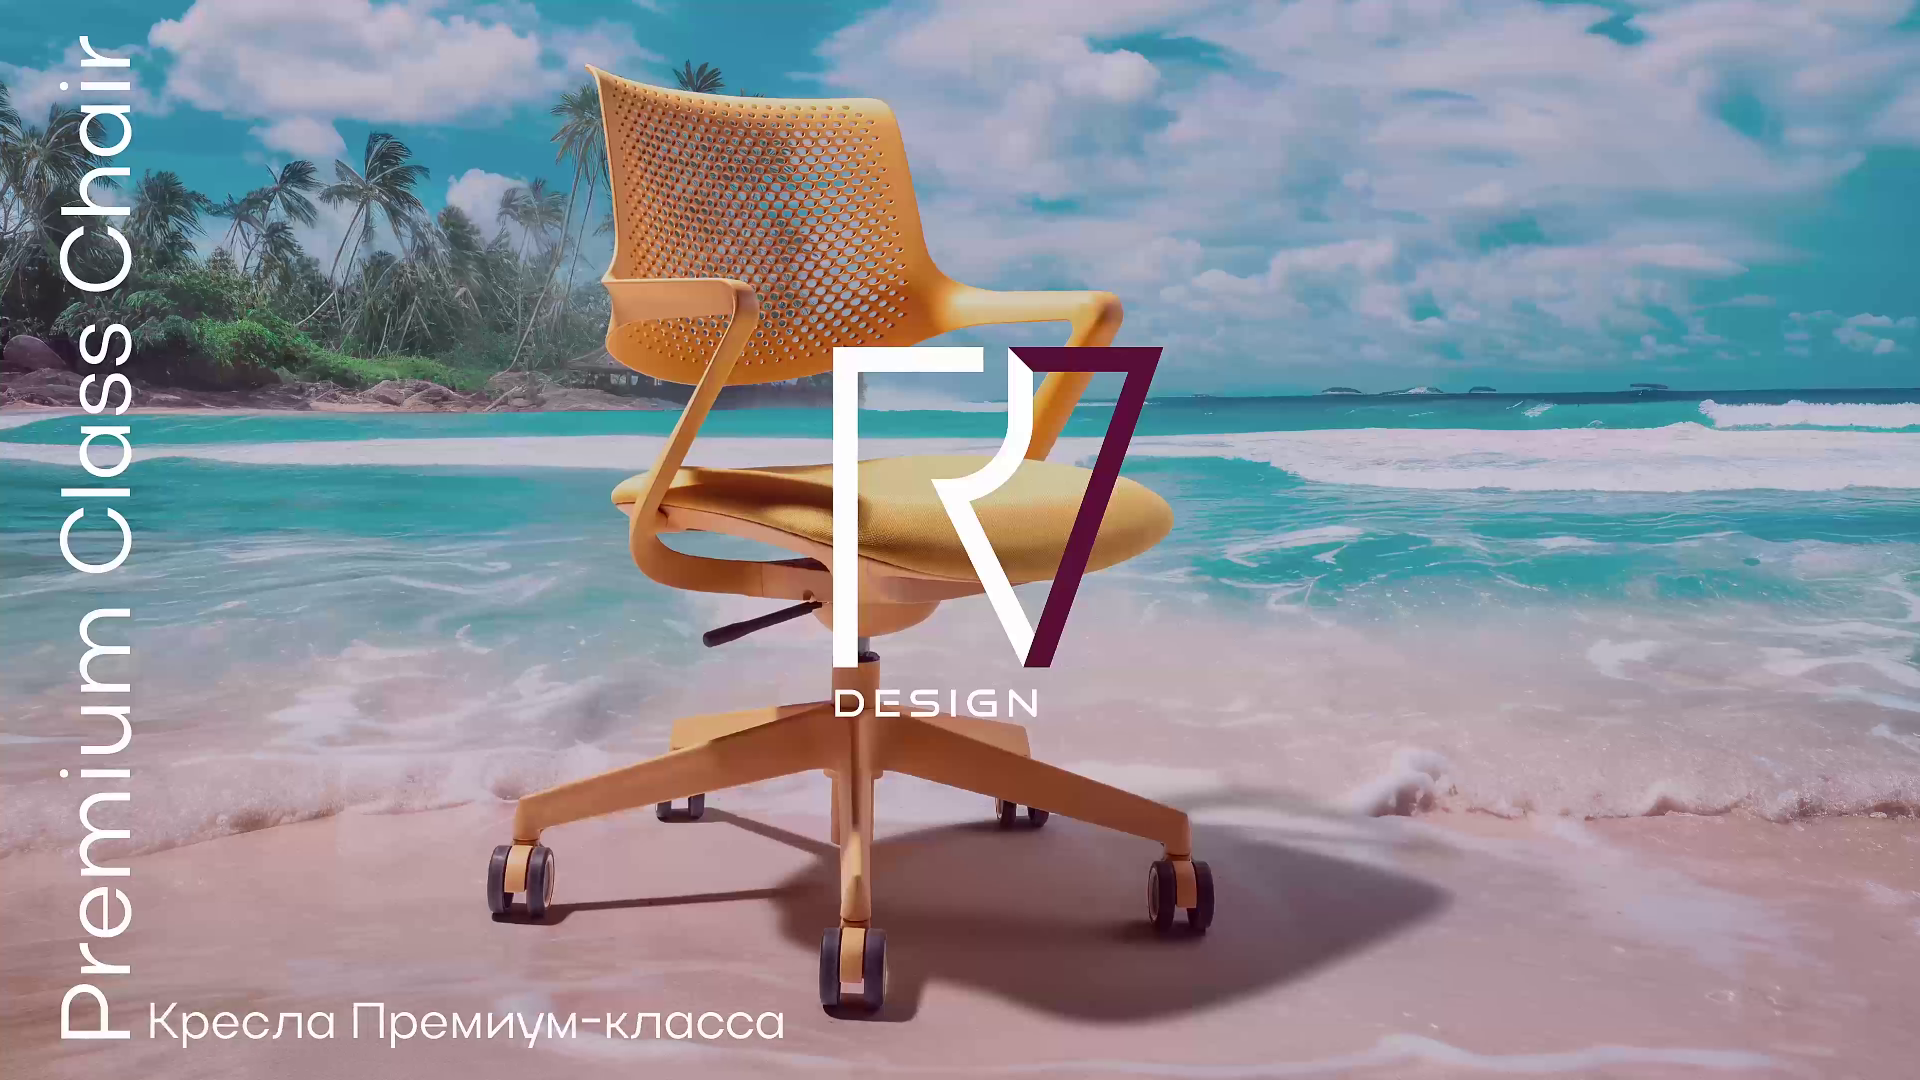 Офисное кресло Dream серия RV Design (B2202)